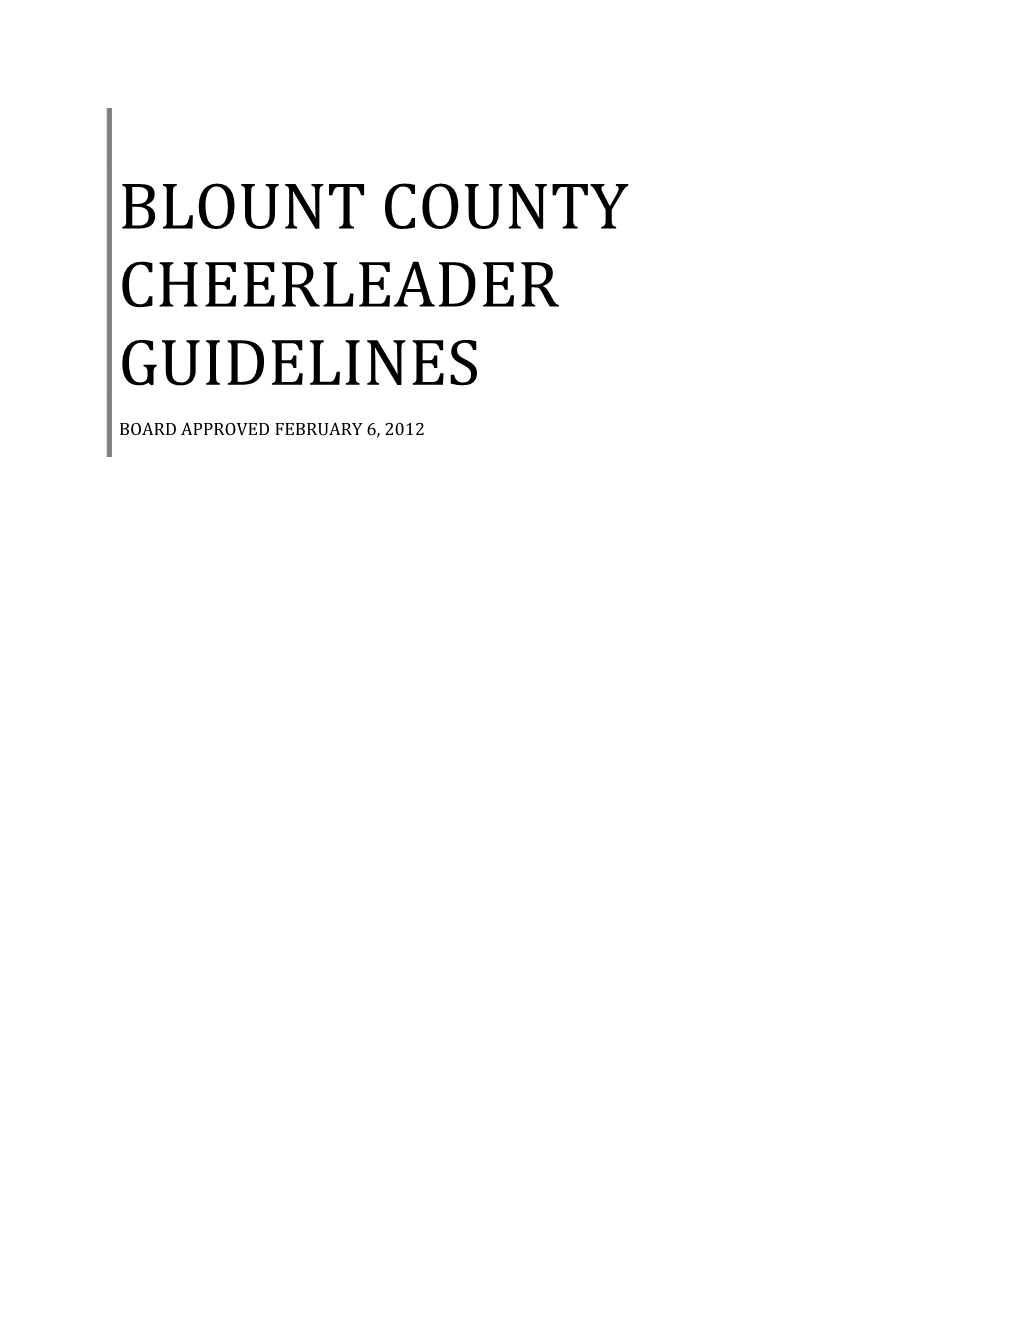 Blount County Cheerleader Guidelines